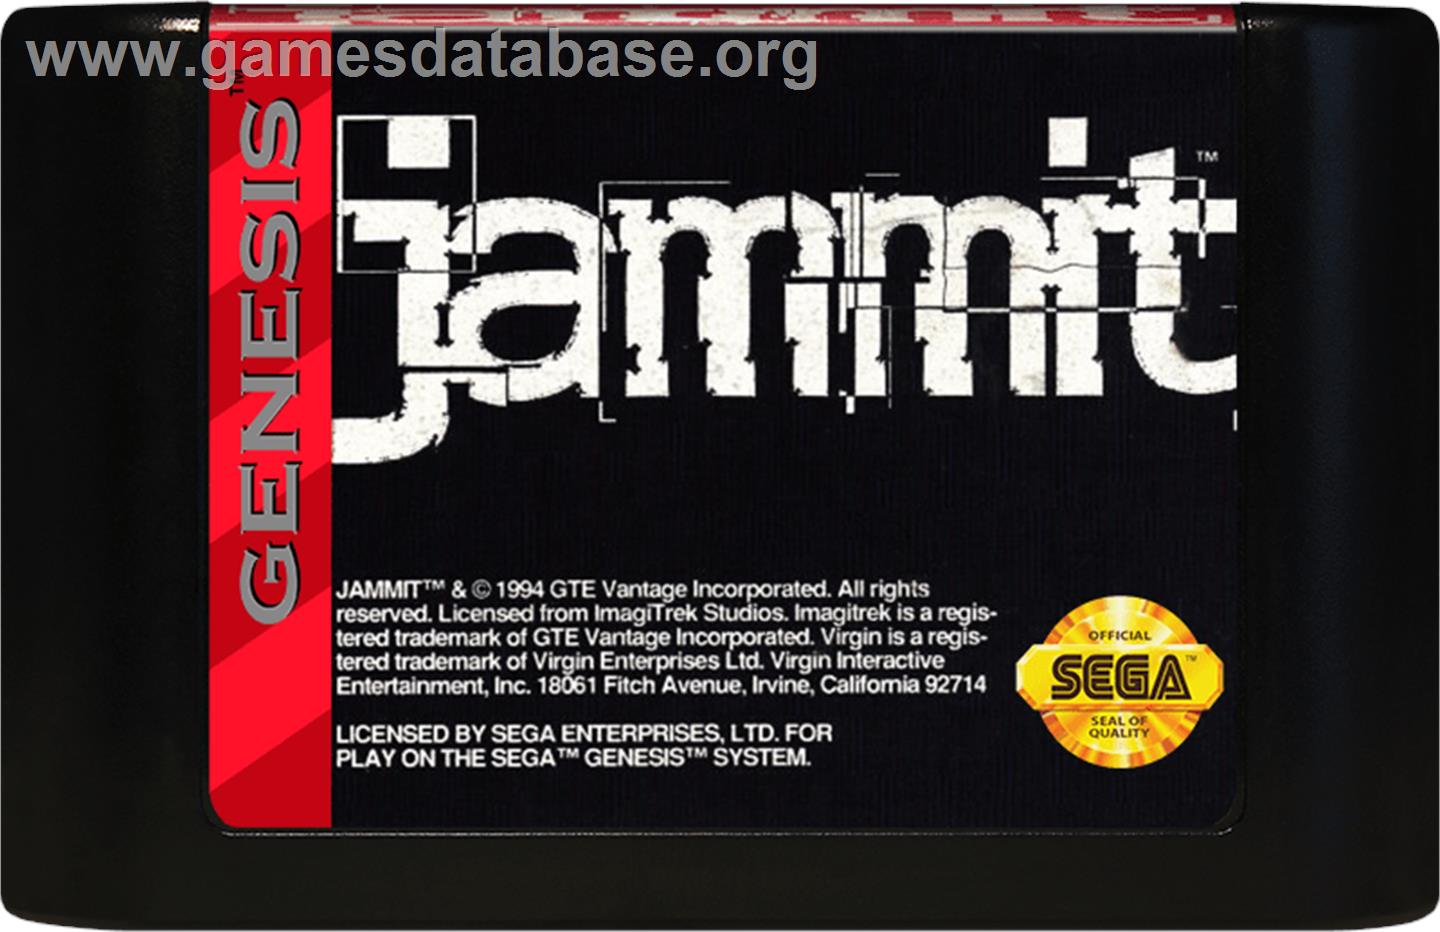 Jammit - Sega Genesis - Artwork - Cartridge